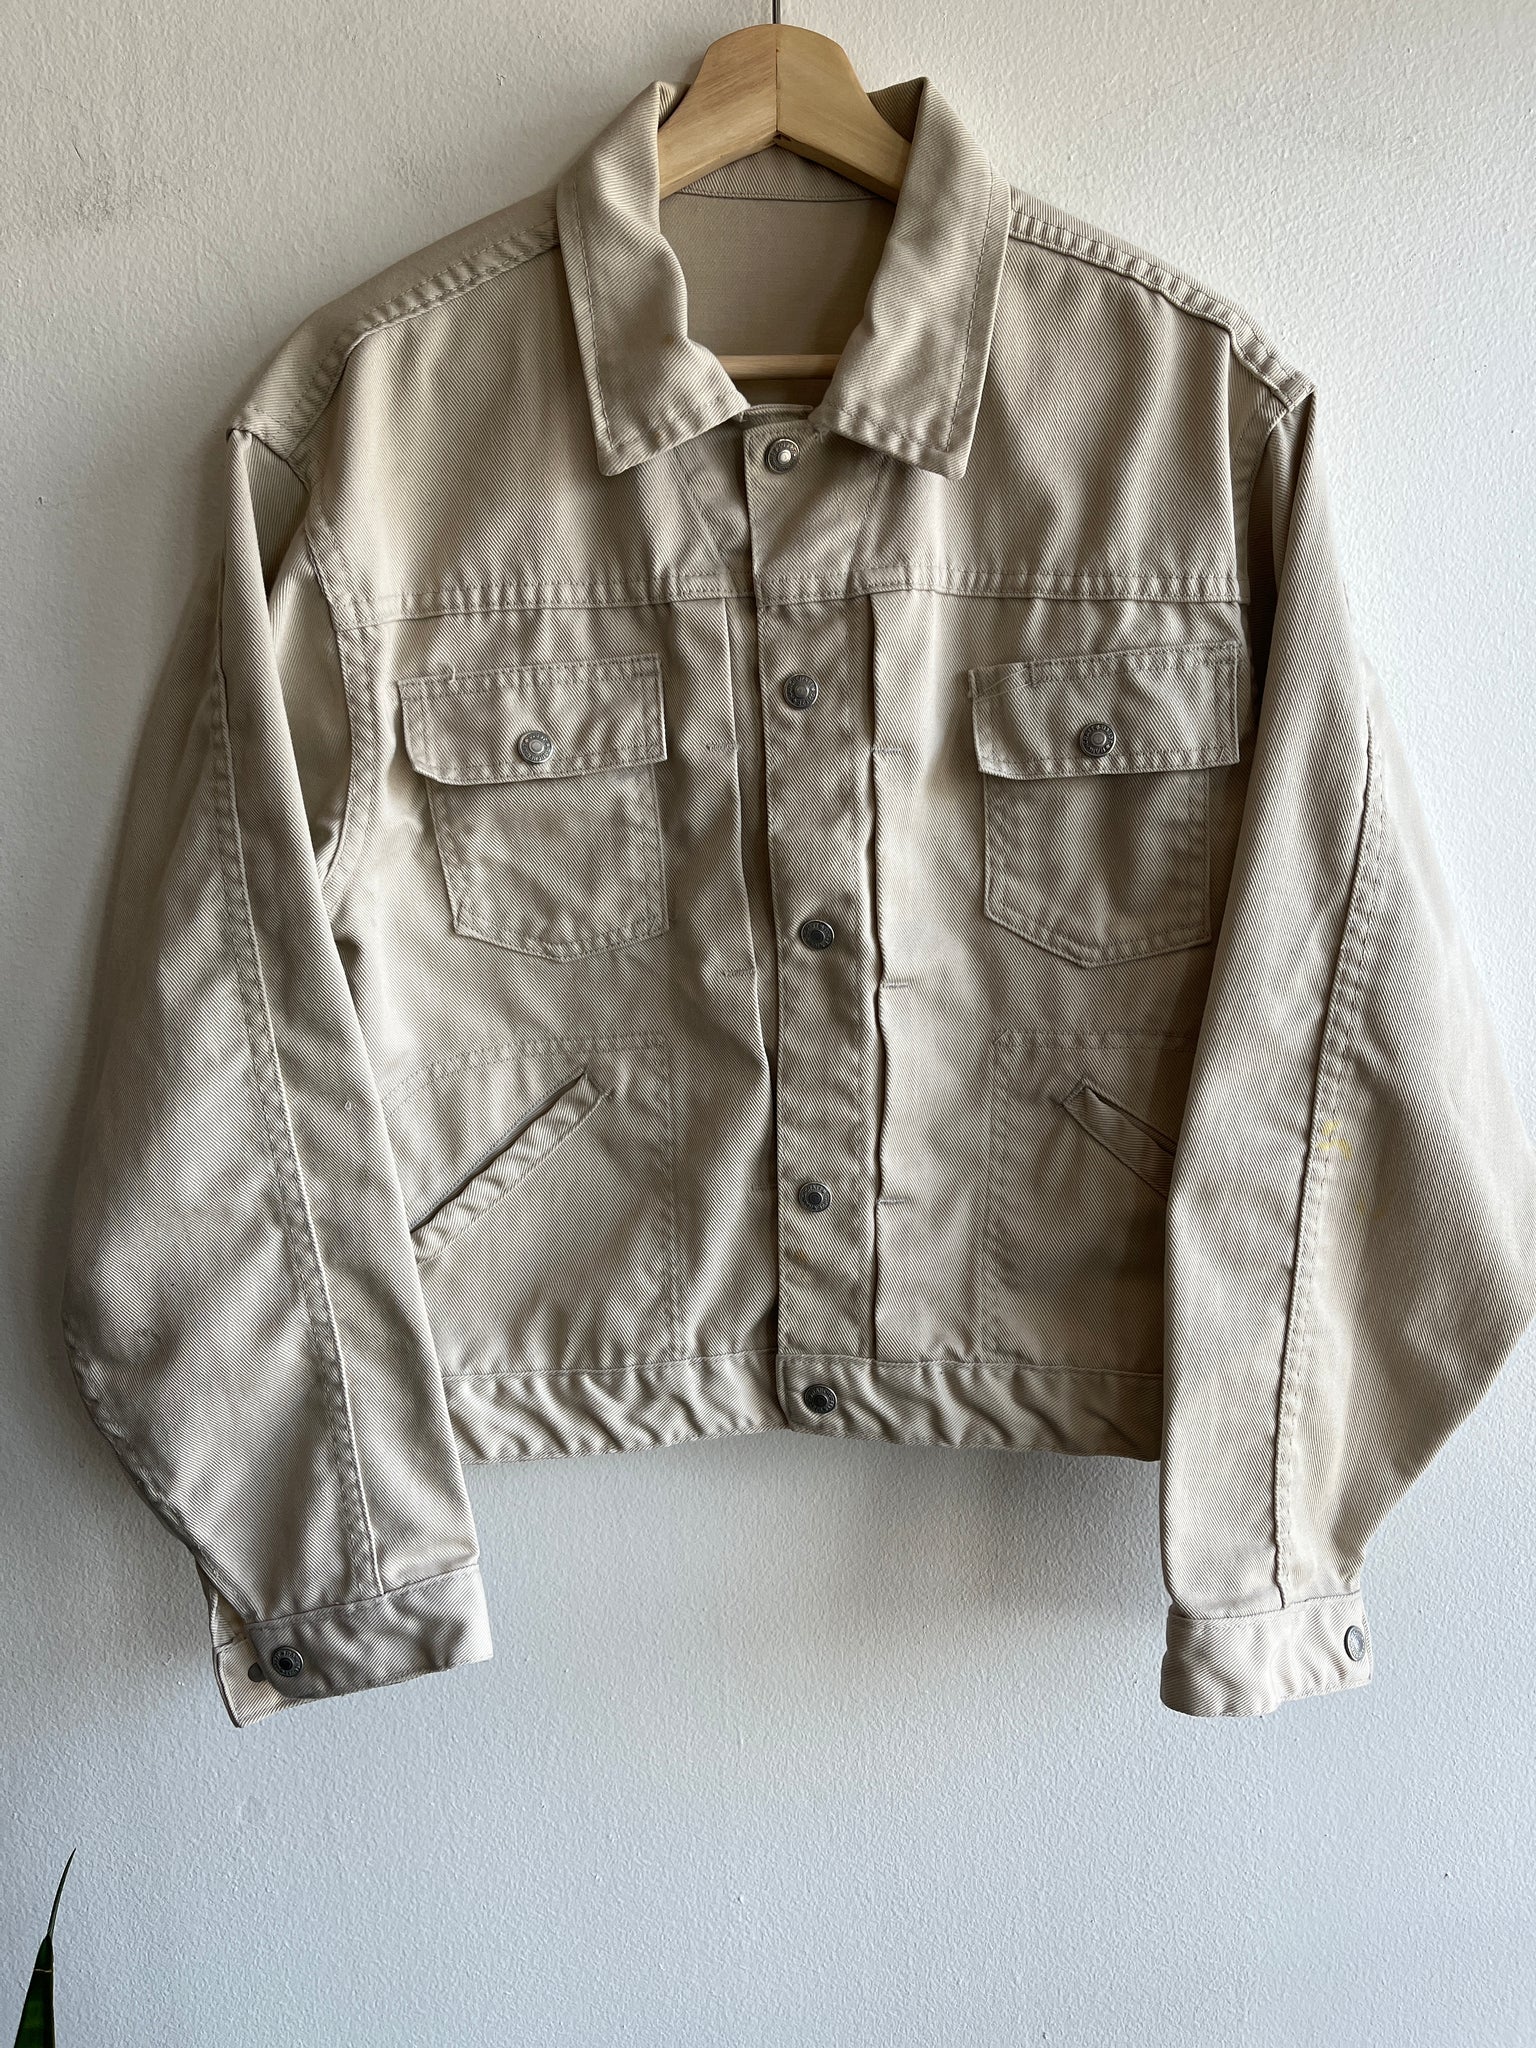 Vintage 1960’s Ranchcraft Twill Work Jacket